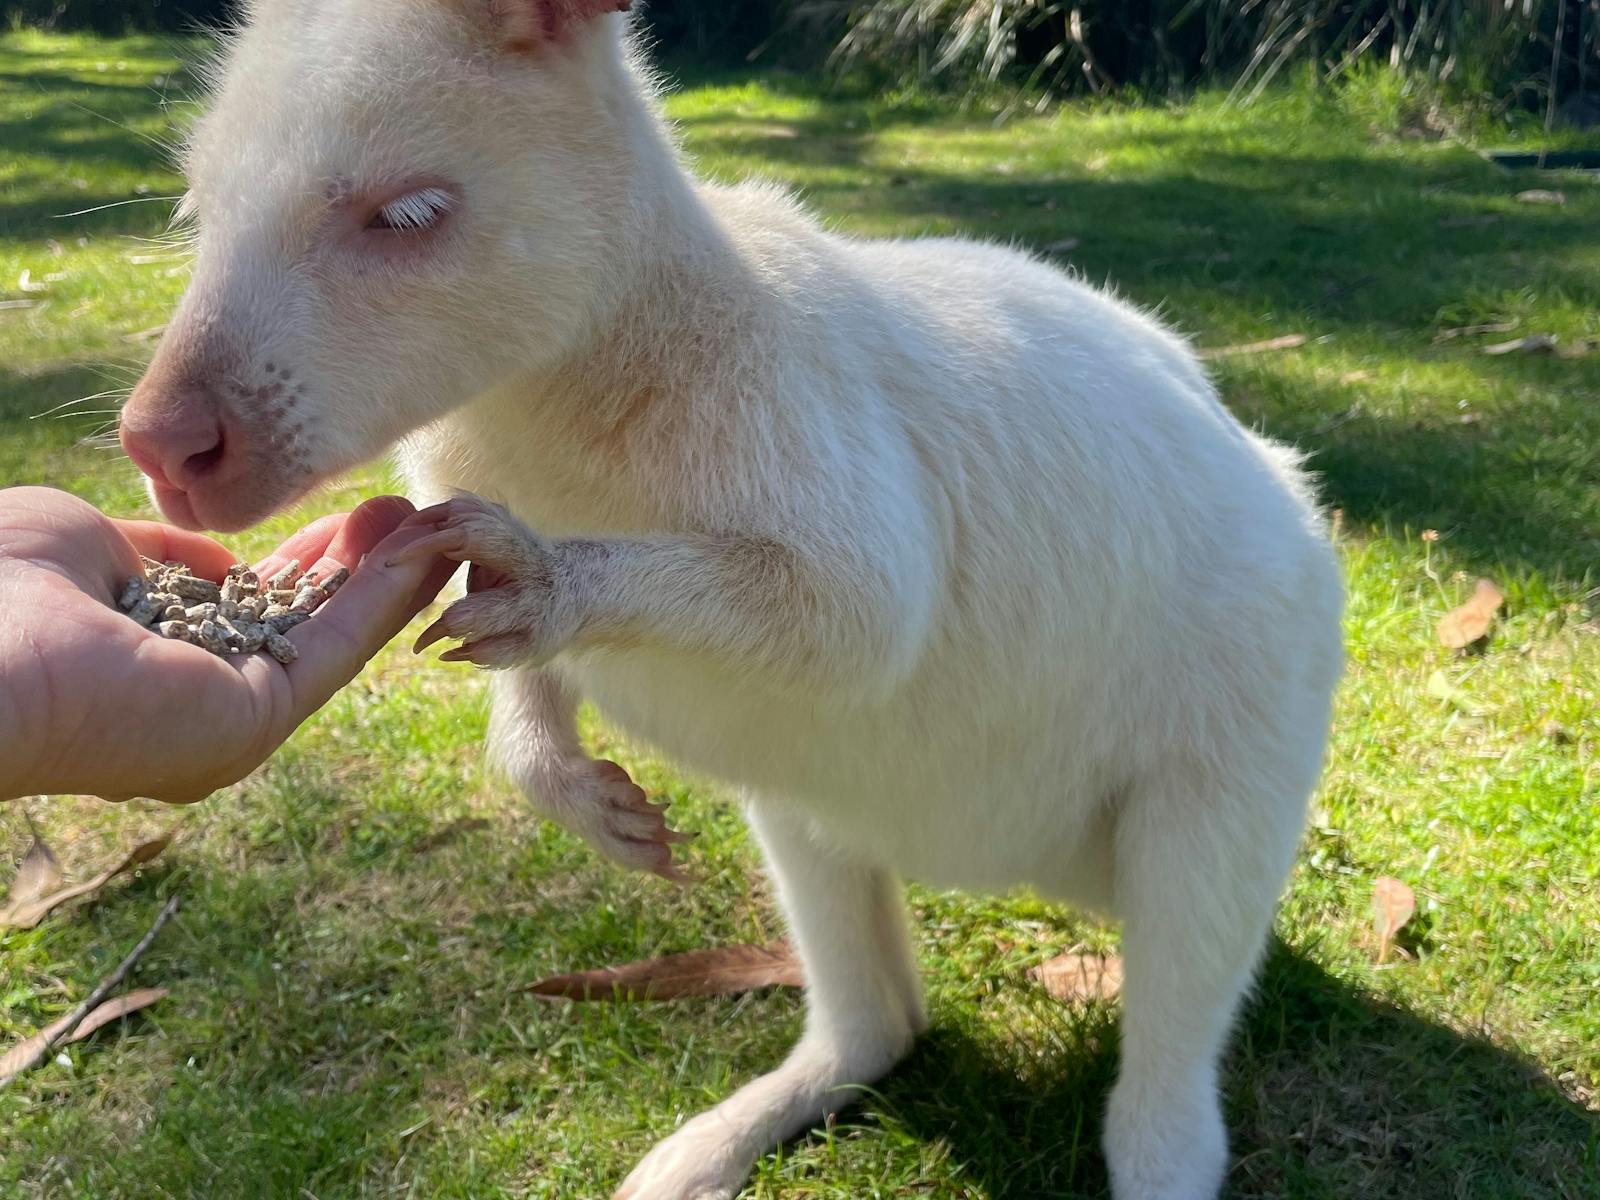 Hand feed albino wallabies